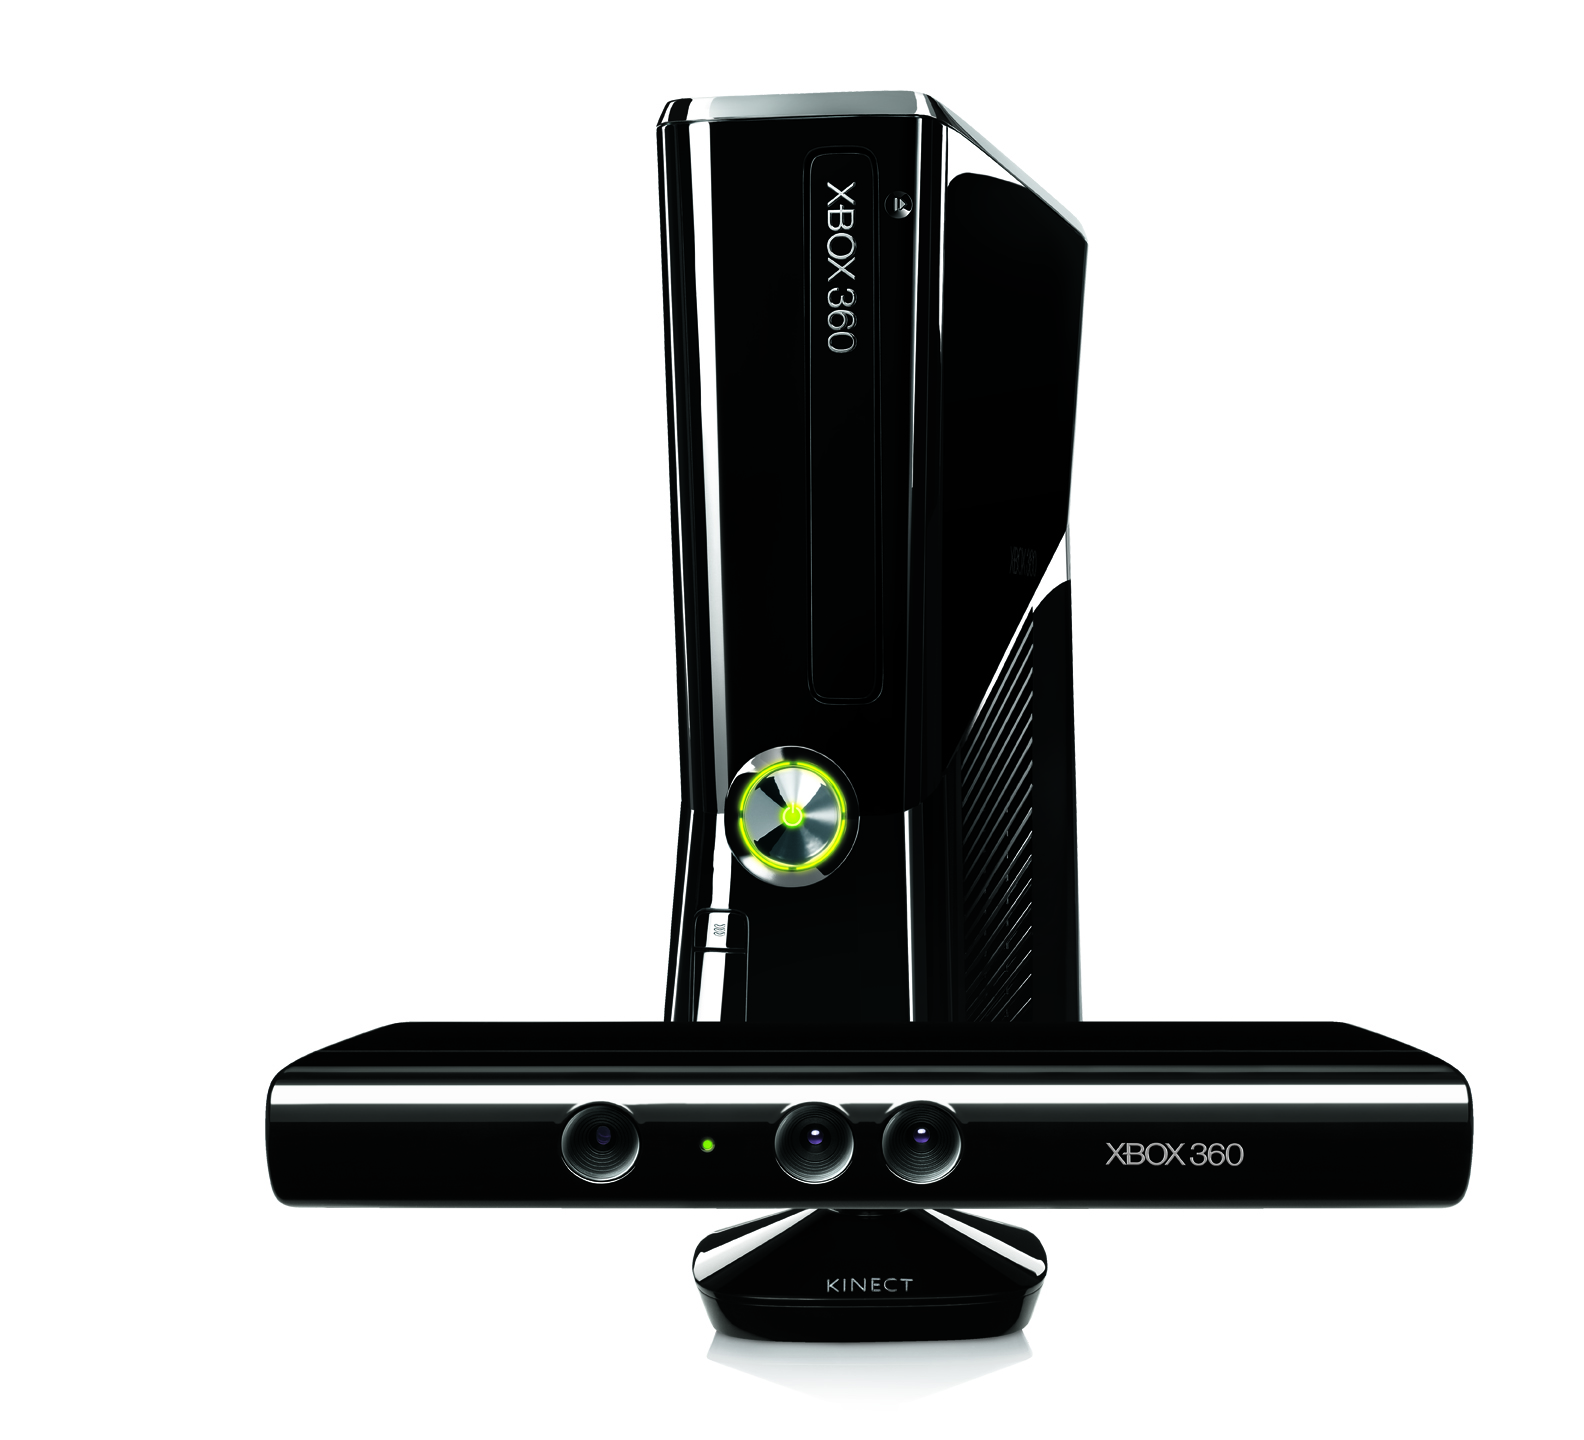 Immagine pubblicata in relazione al seguente contenuto: Microsoft lancer una nuova versione di Kinect per PC nel 2012 | Nome immagine: news16101_1.jpg